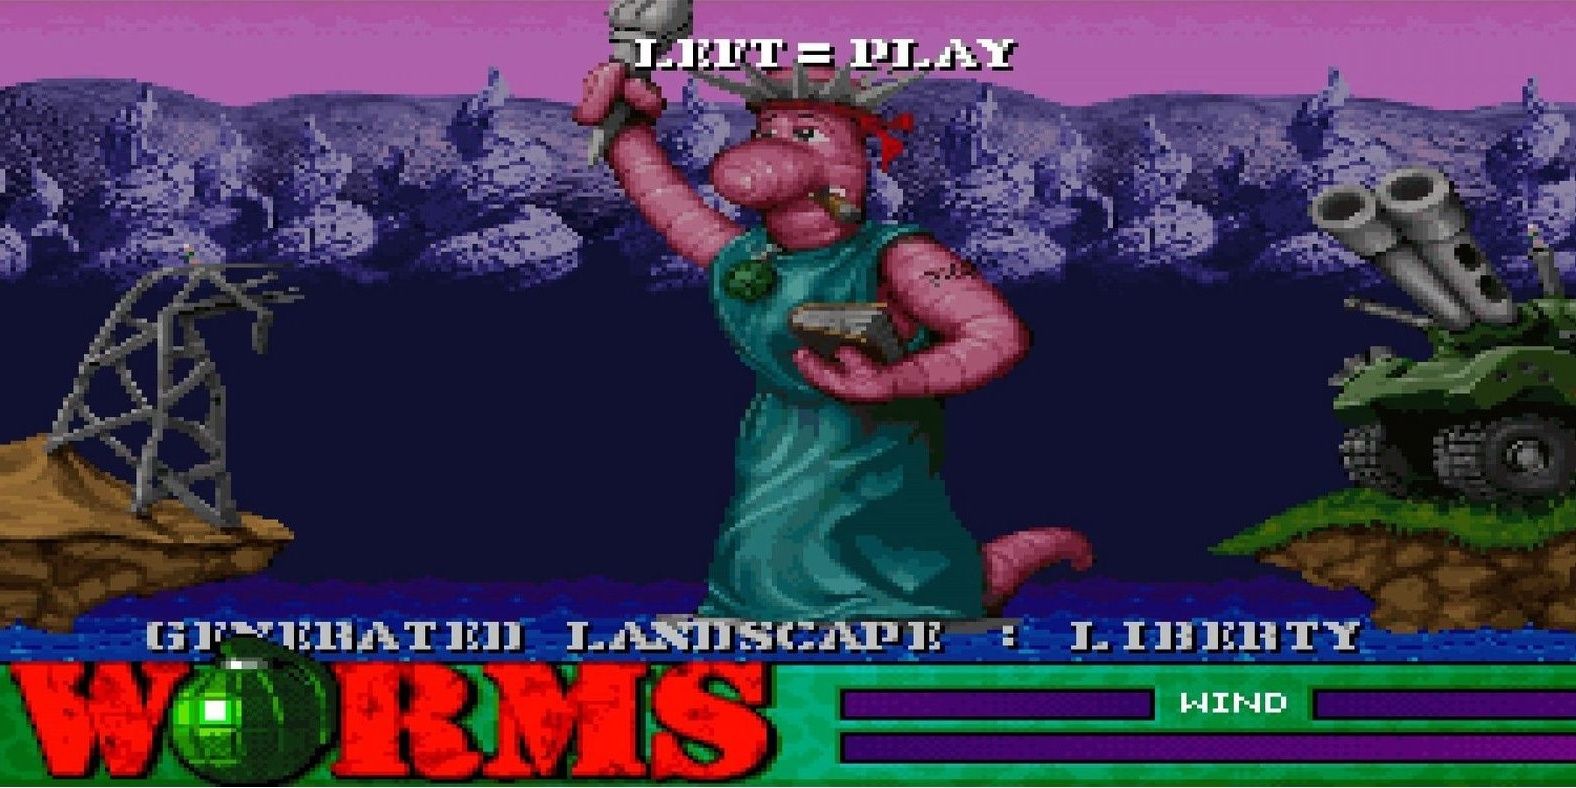 Migliori giochi Amiga - Worms